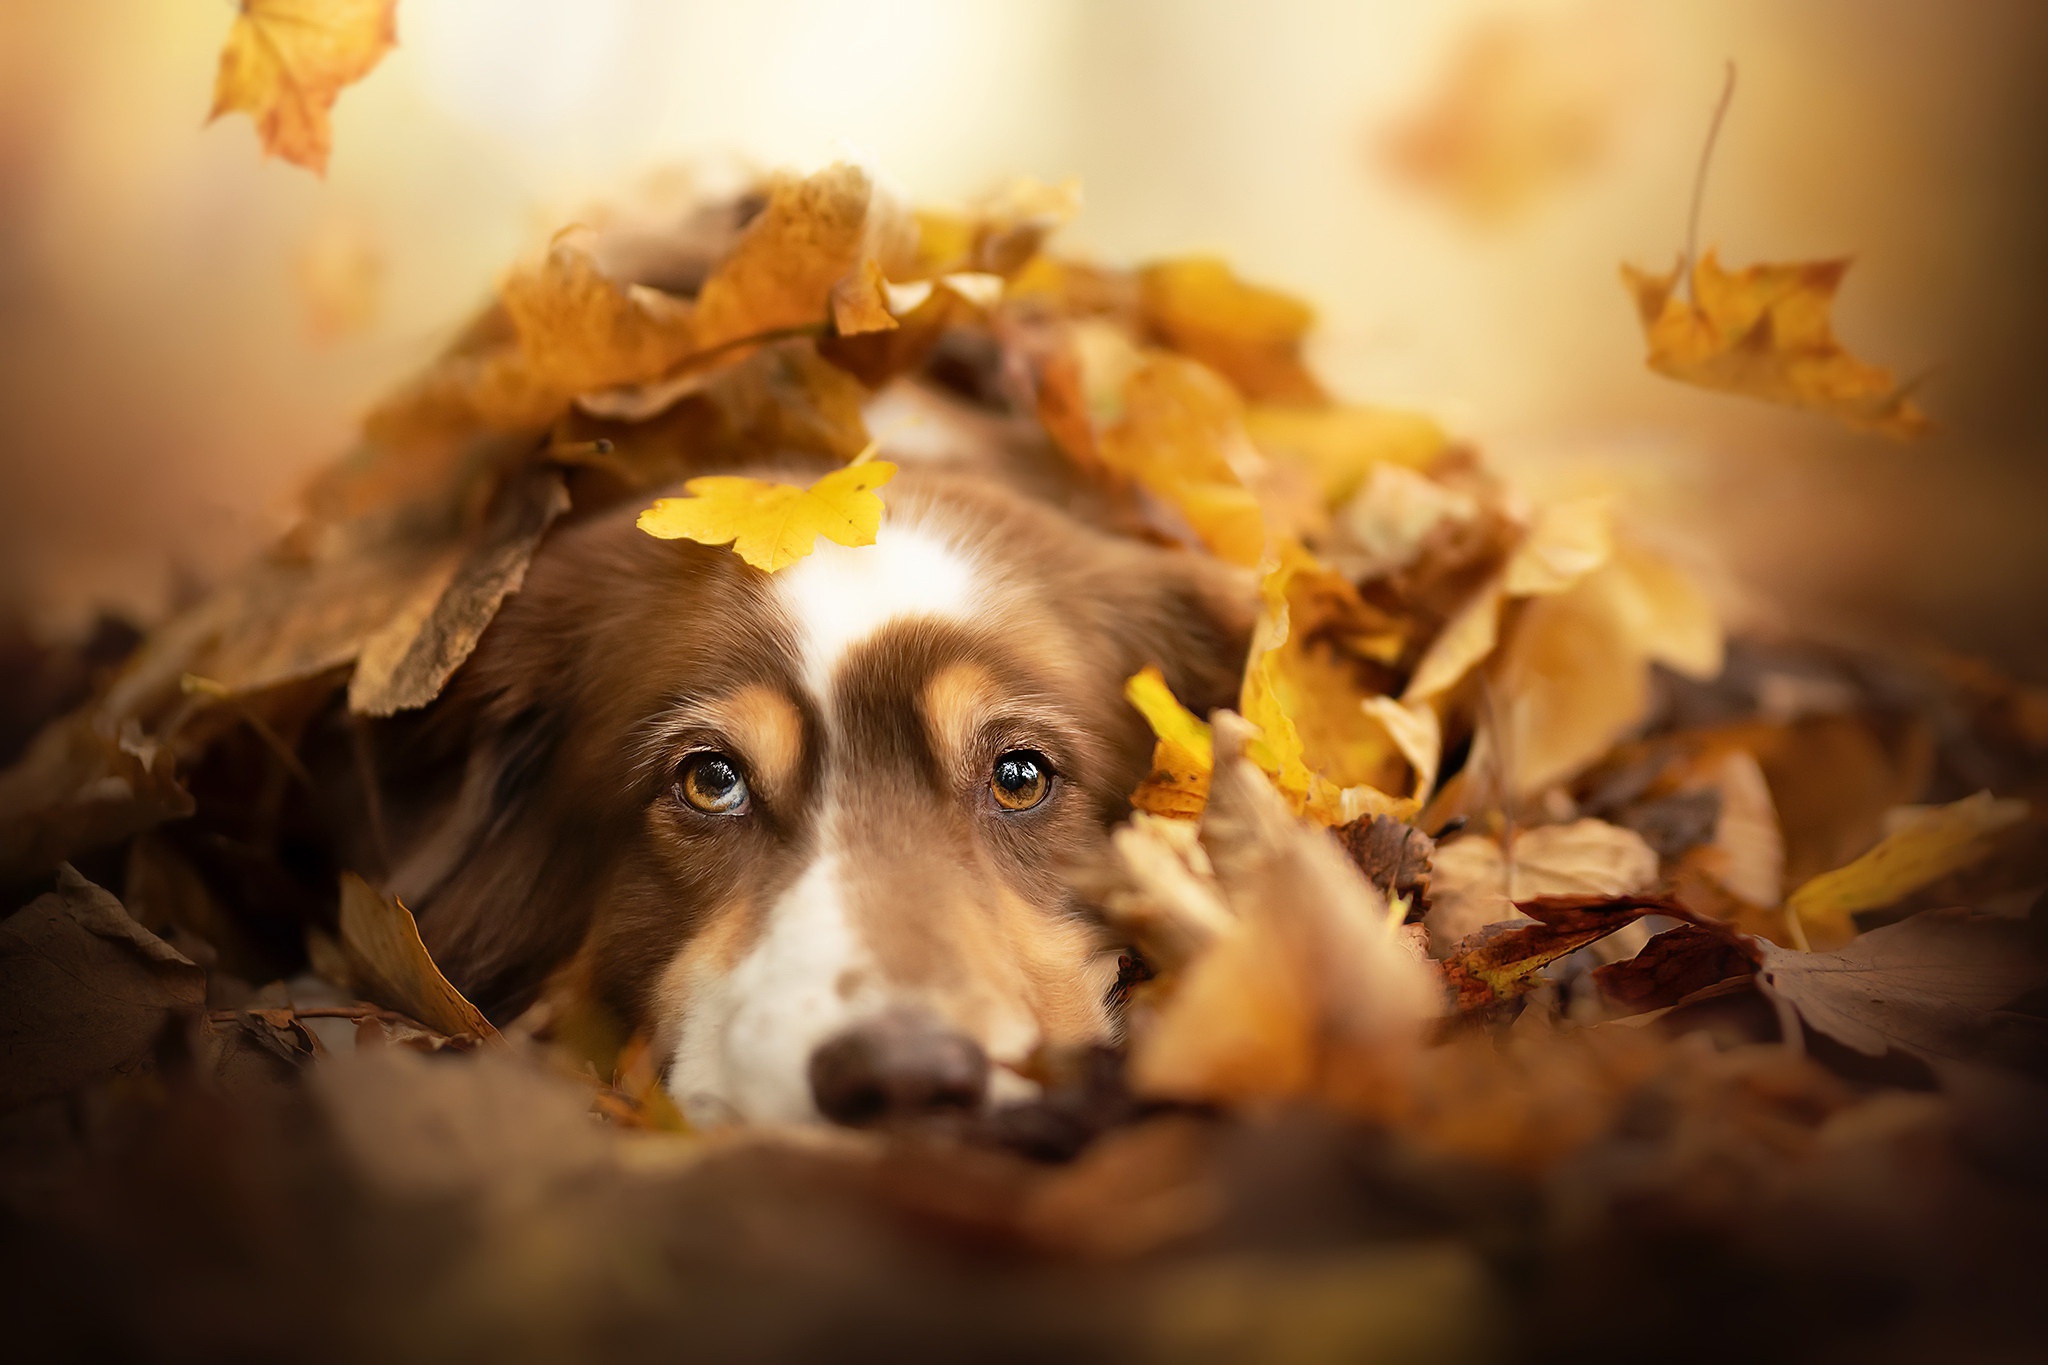 Скачать обои бесплатно Животные, Собаки, Осень, Собака, Листва, Глазеть картинка на рабочий стол ПК